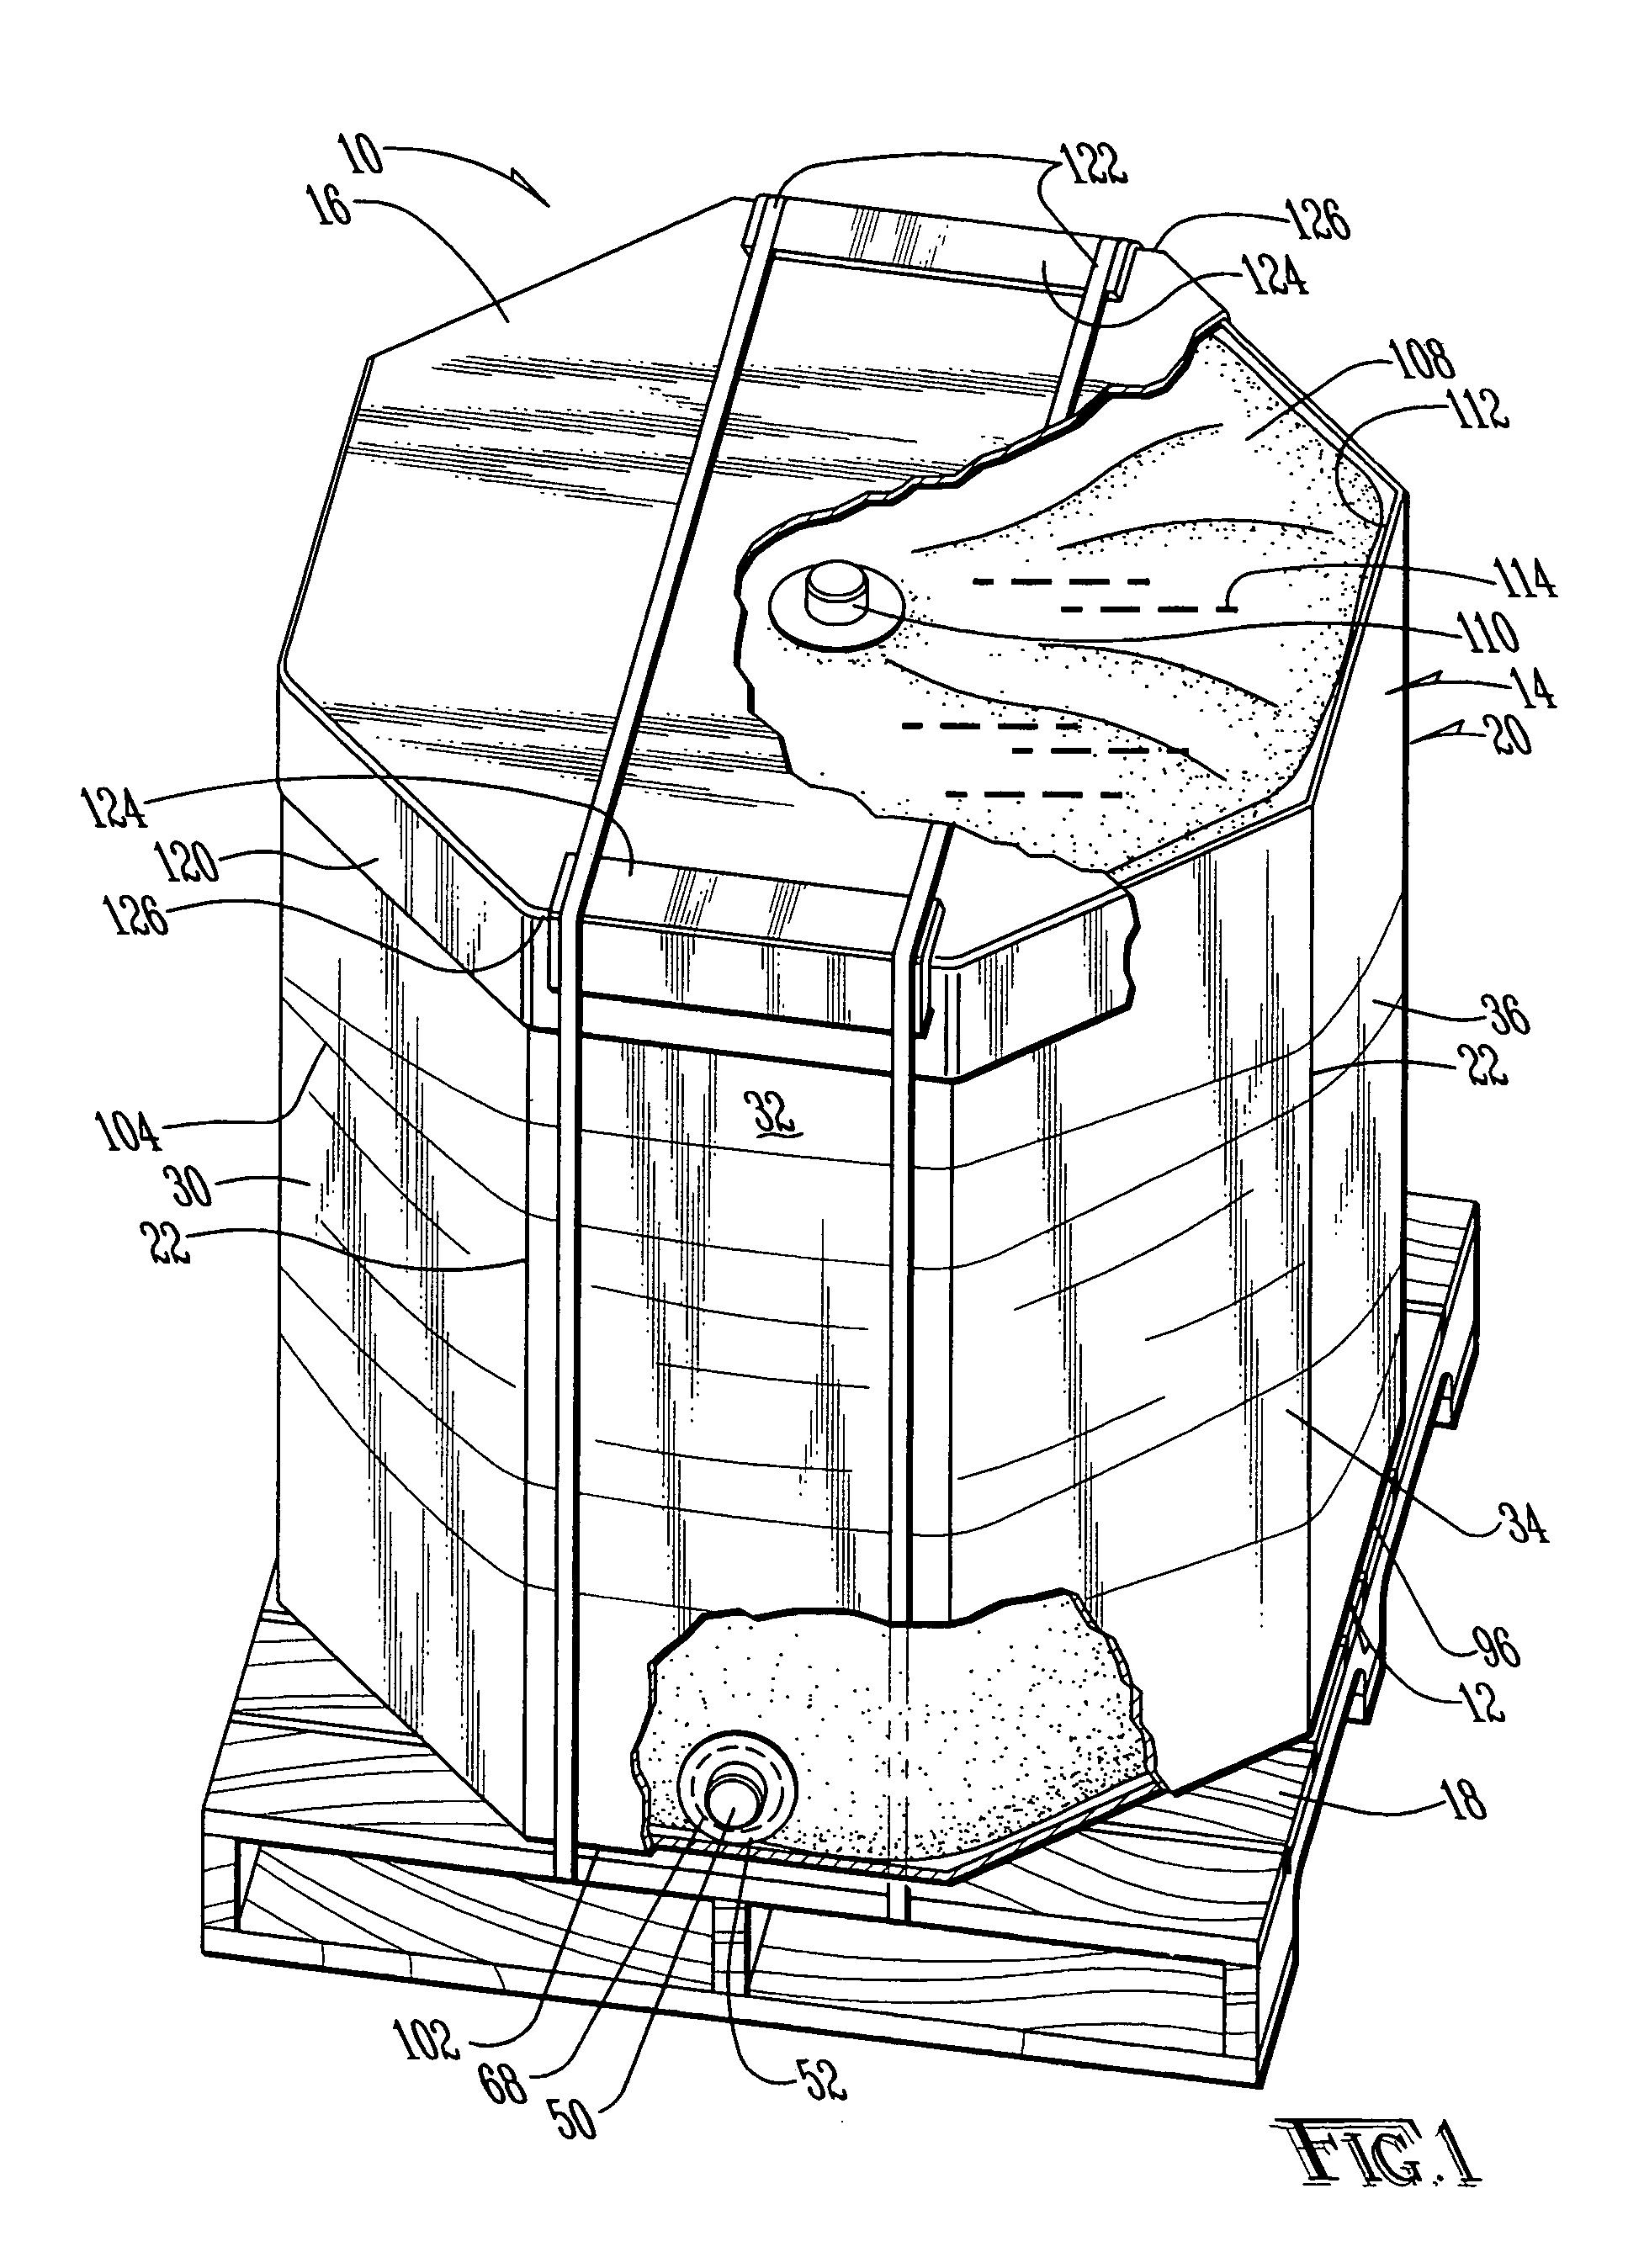 Interlocking container